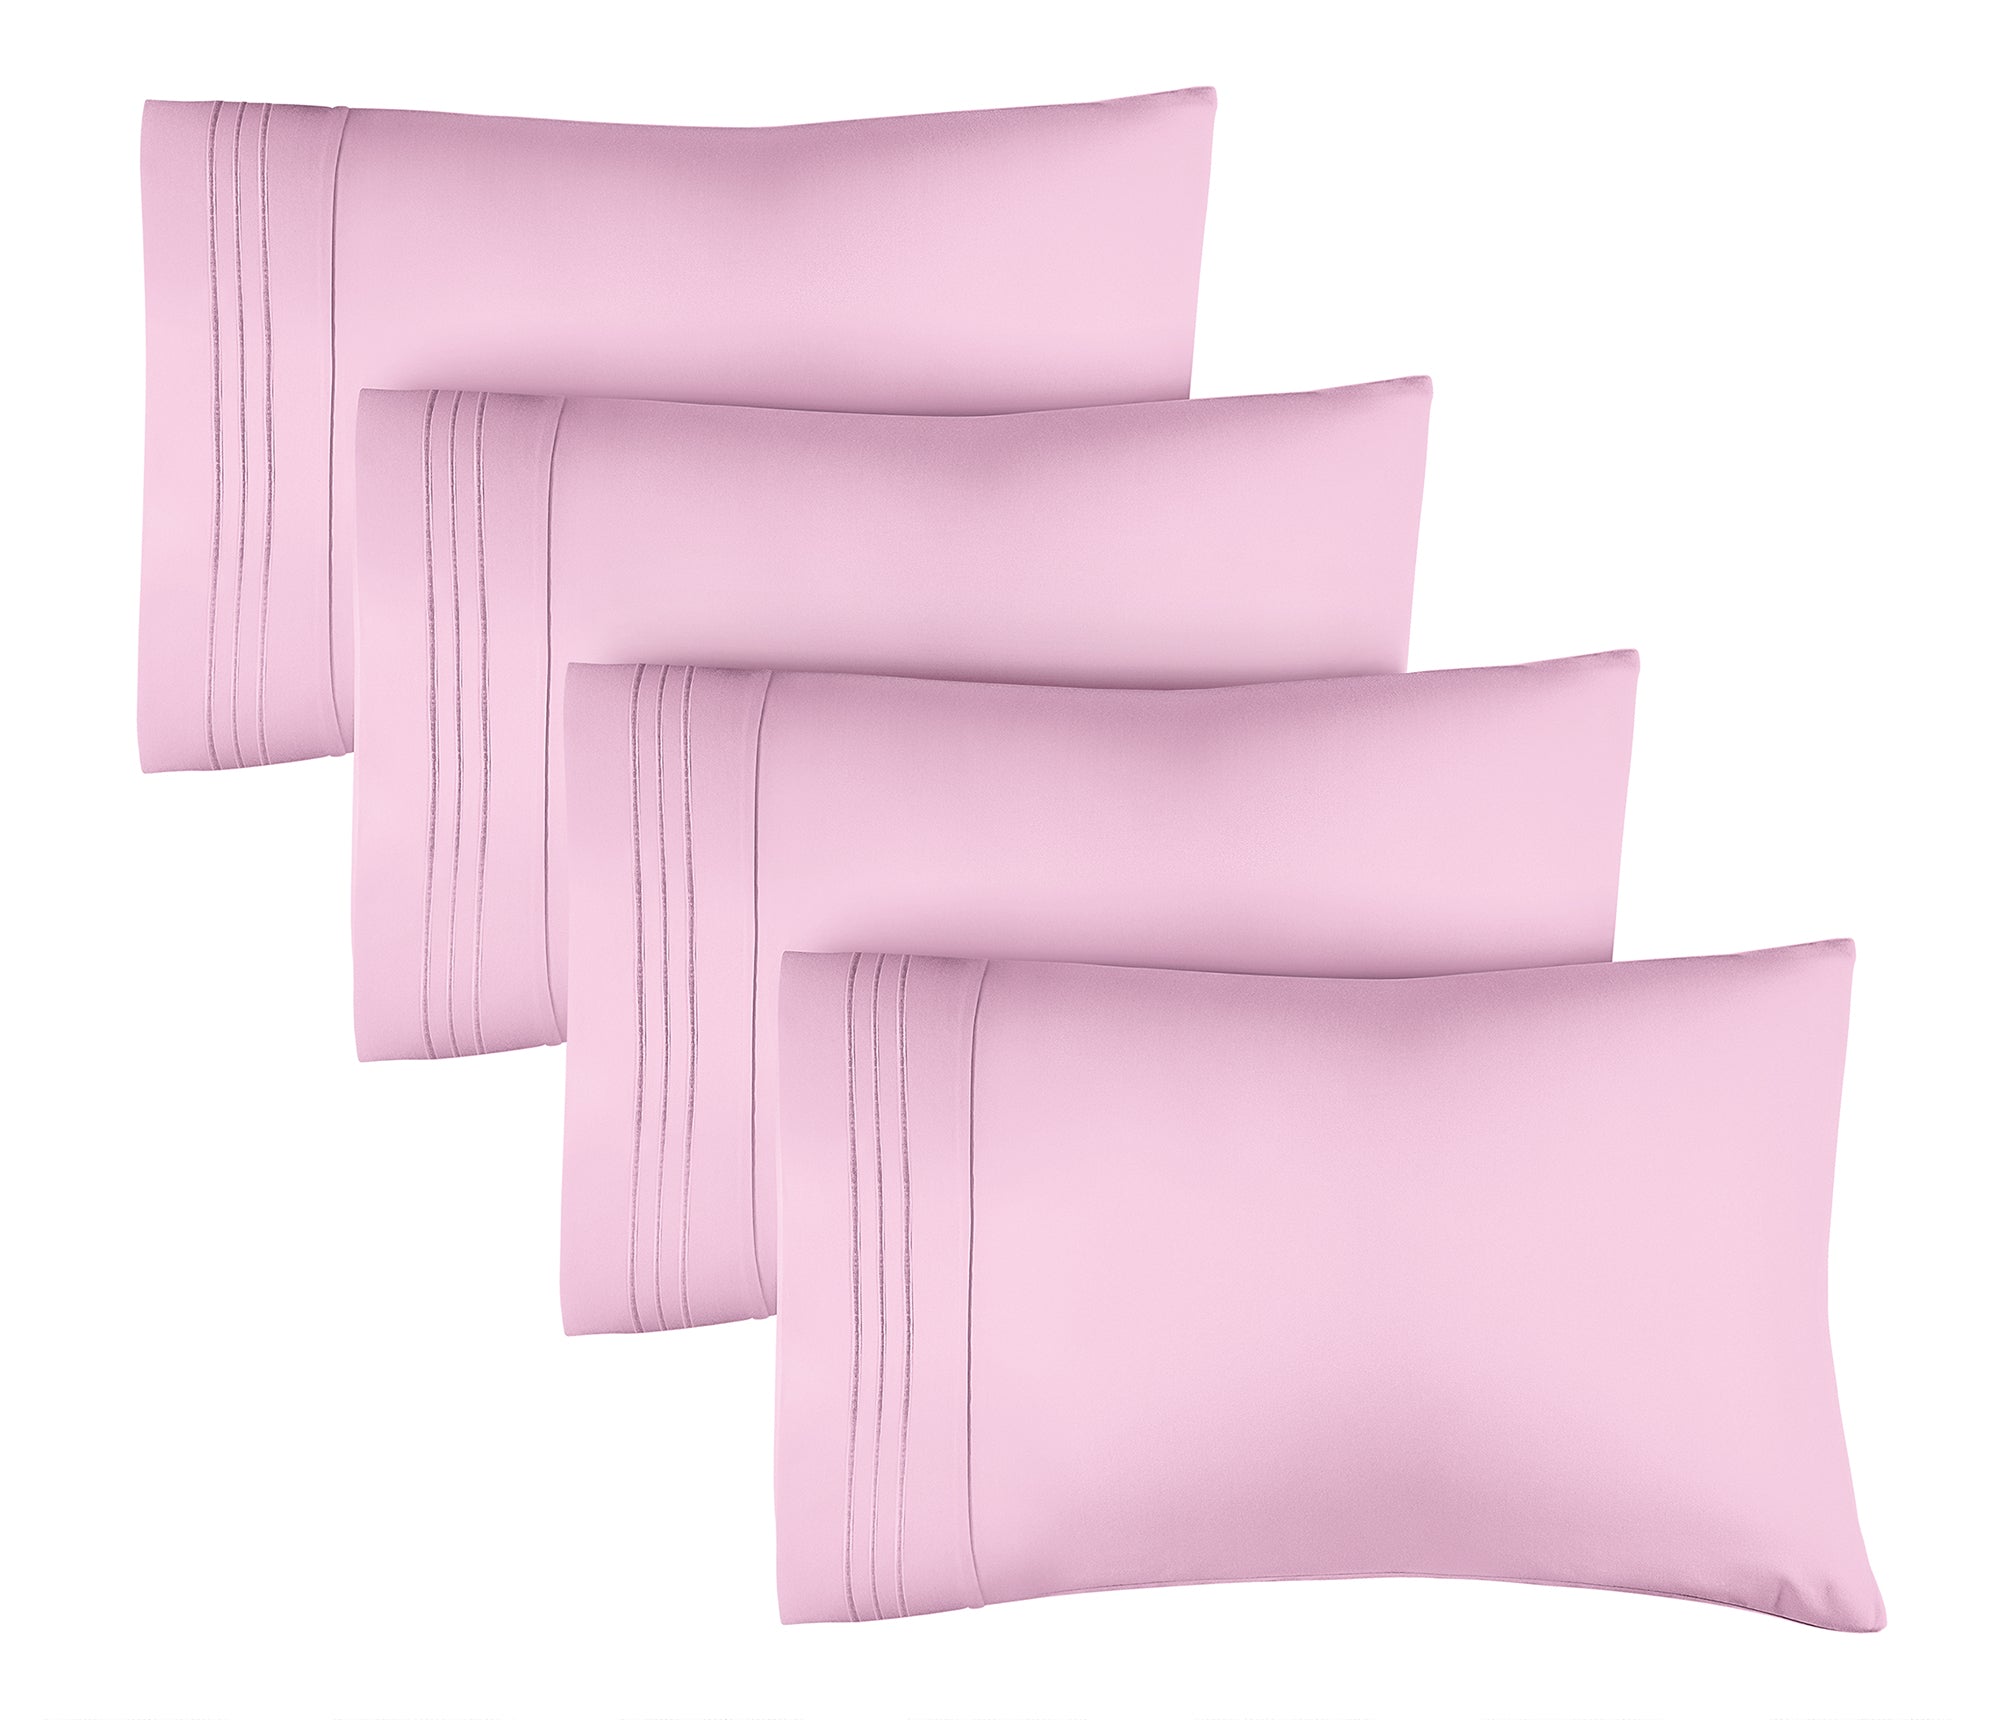 4 Pillowcase Set - Light Pink